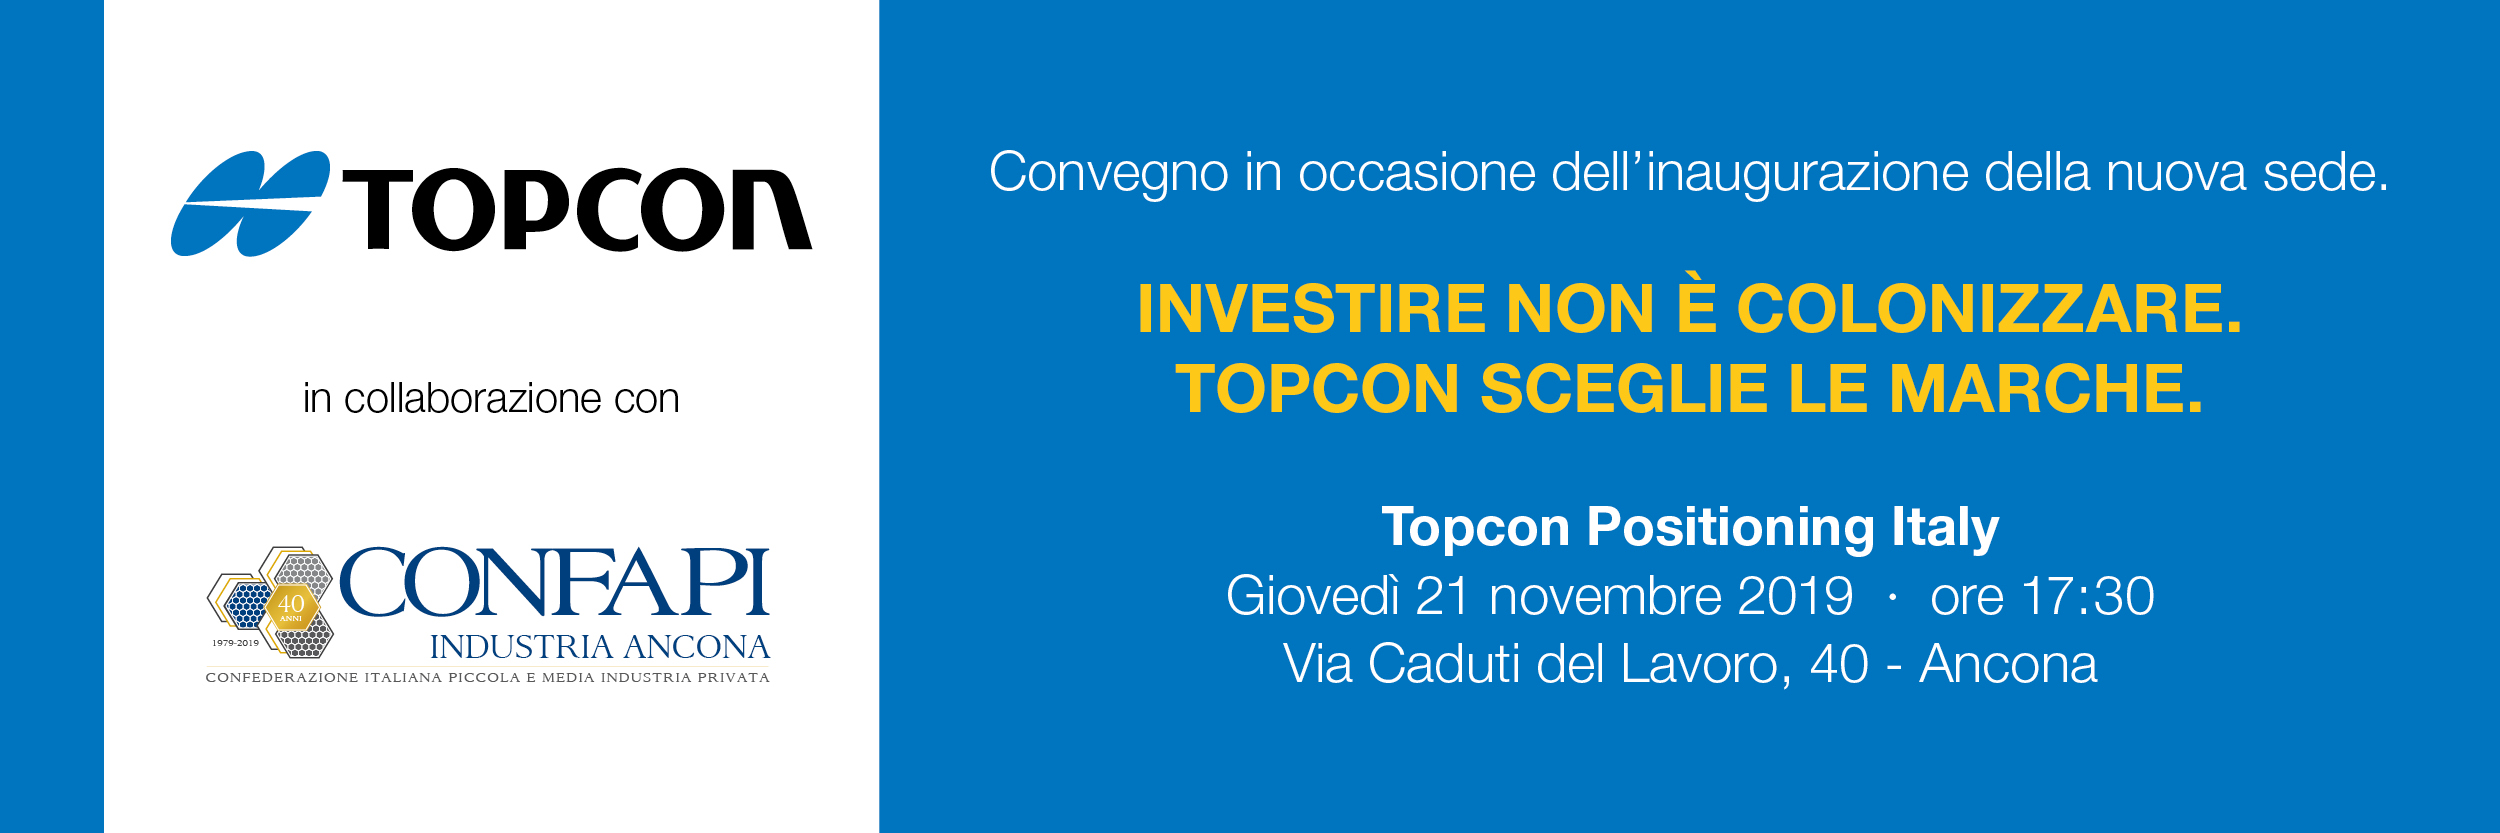 Inaugurazione nuova sede di Topcon nella Regione Marche 